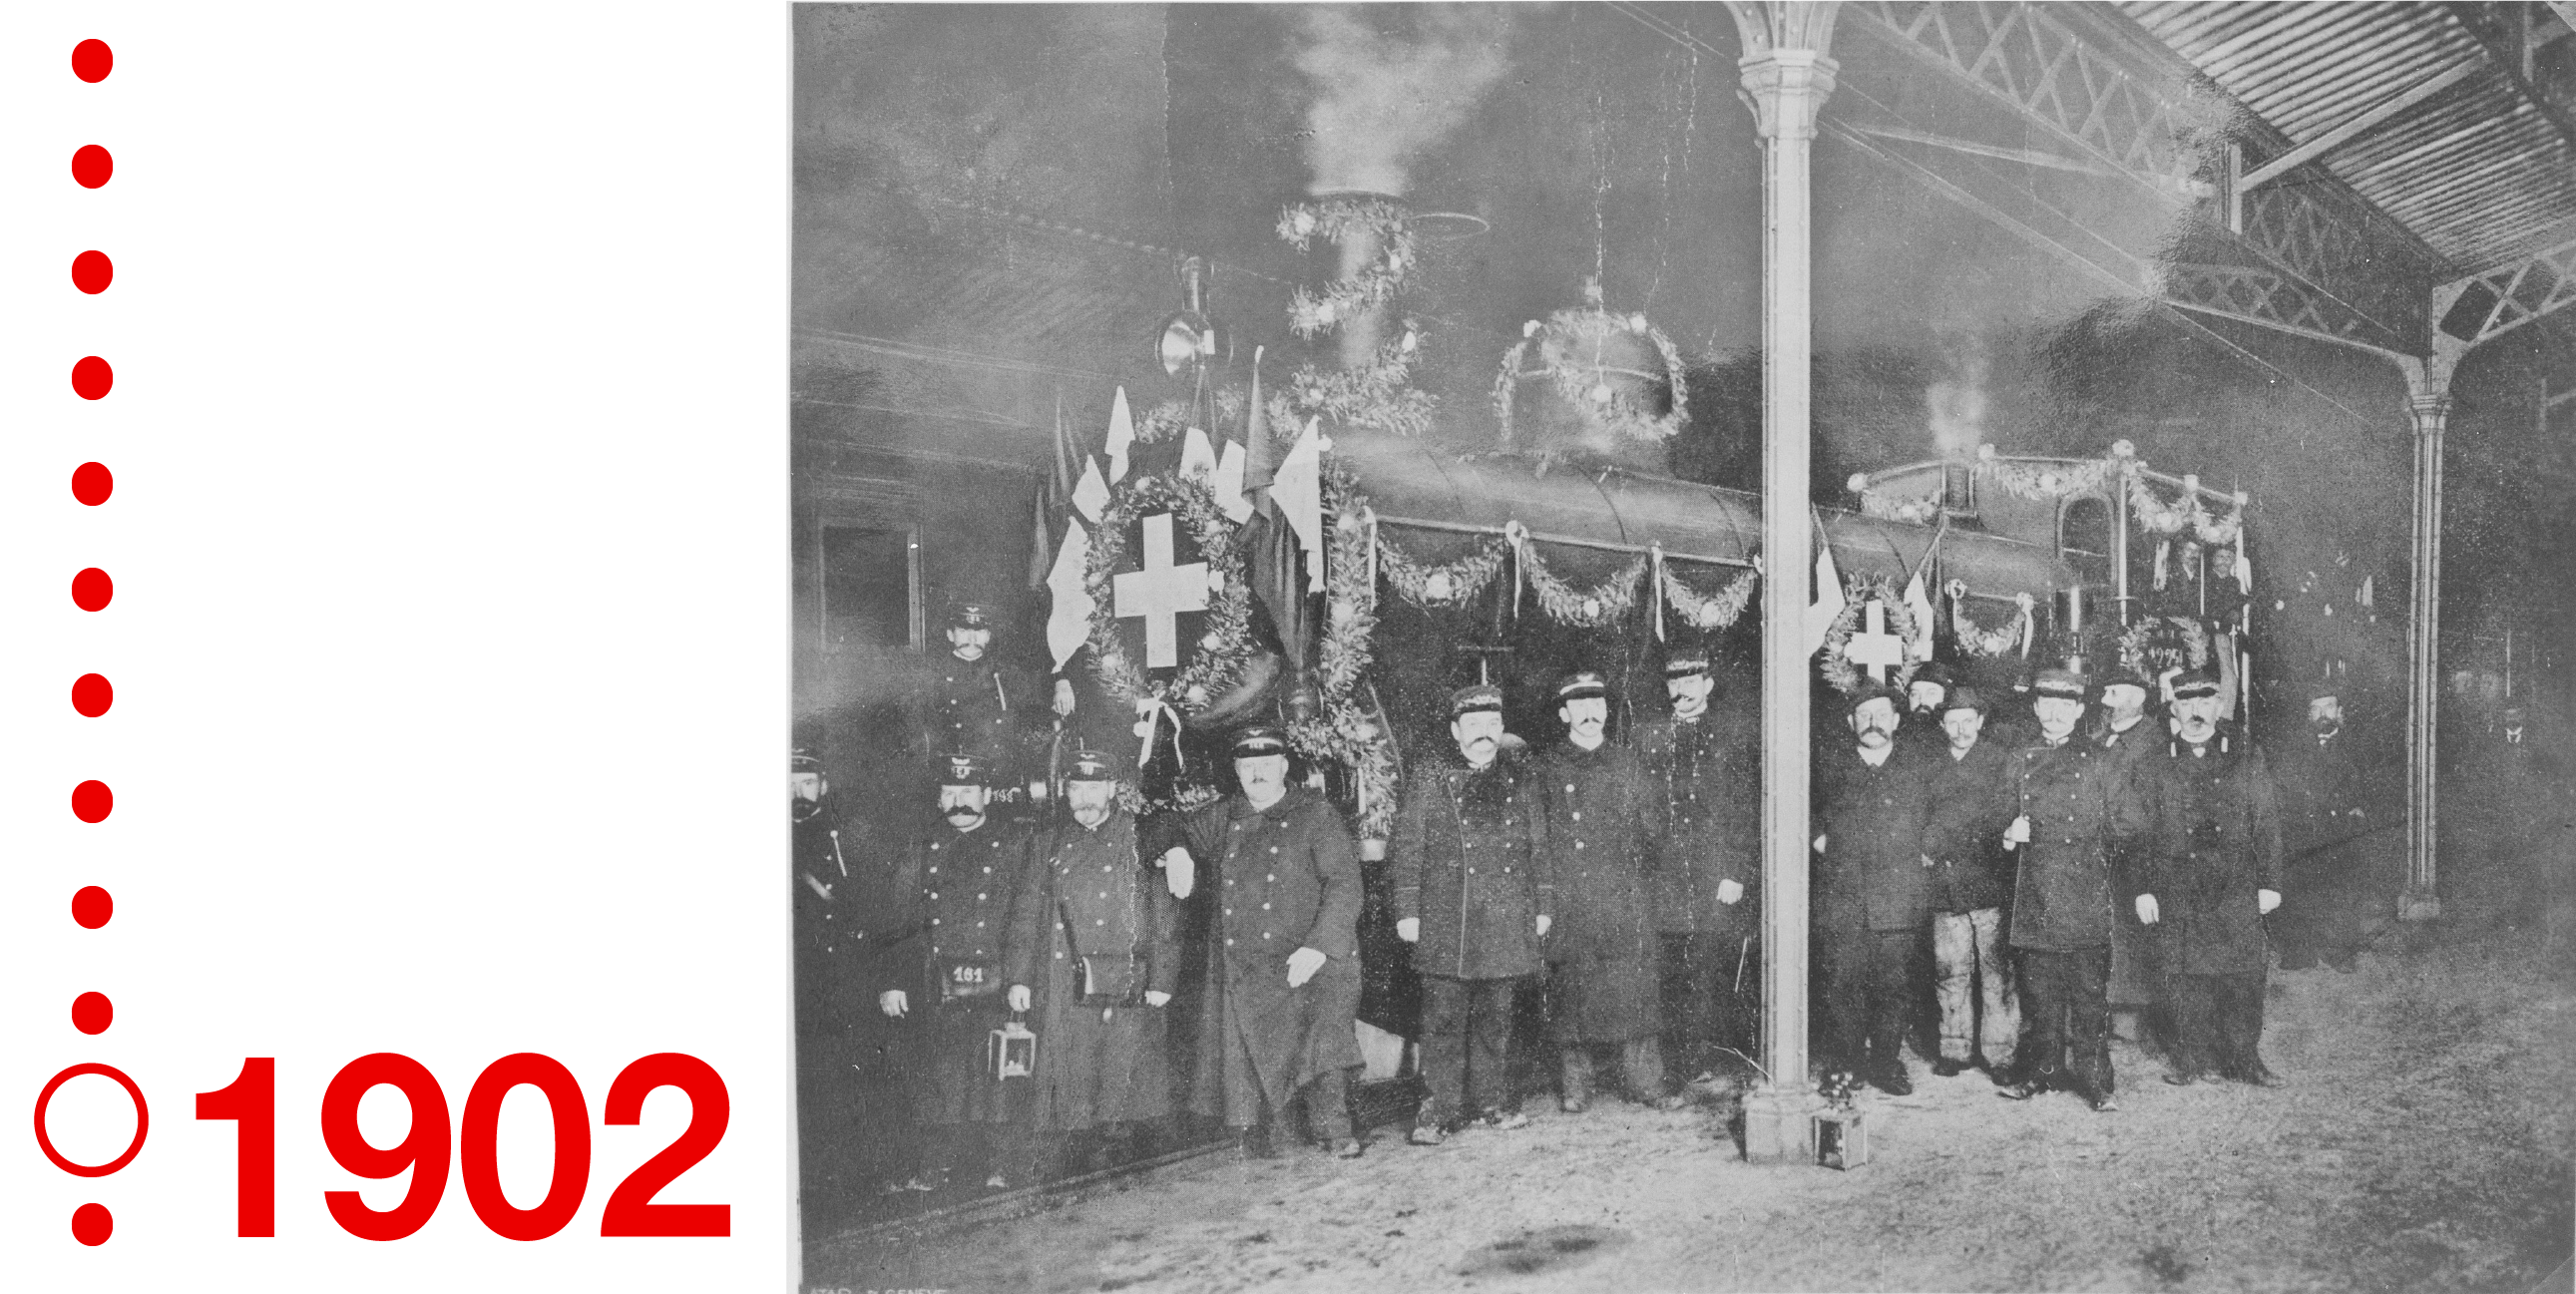 Gruppenfoto des Personals vor dem ersten SBB-Zug im Jahr 1902